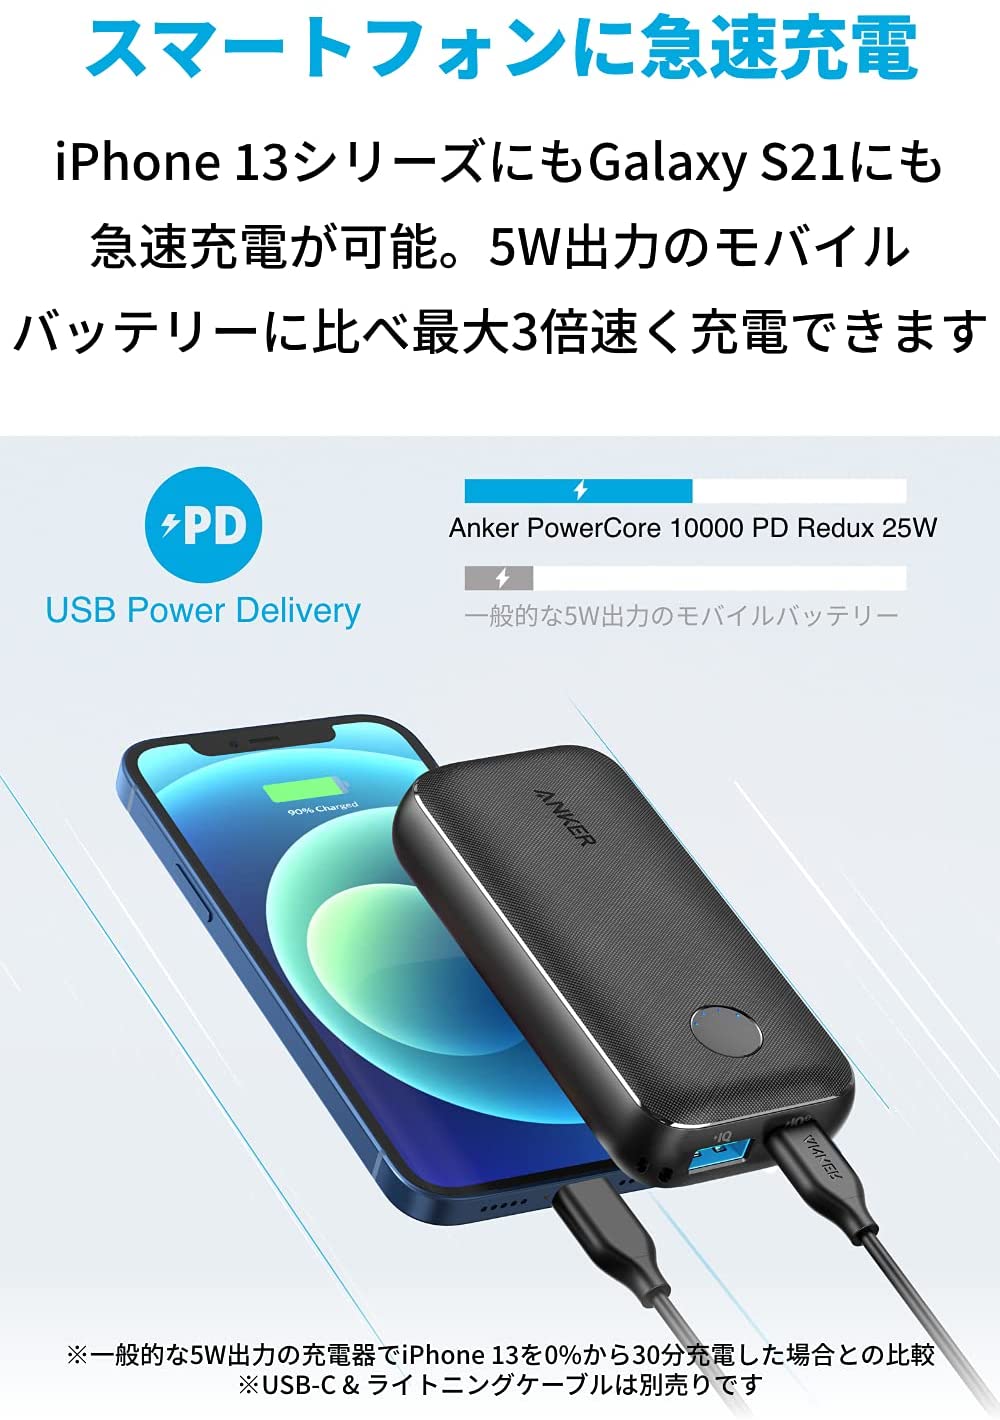 【あす楽対応】Anker PowerCore 10000 PD Redux 25W（モバイルバッテリー 10000mAh 大容量 ）【USB Power Delivery対応/PPS規格対応/PowerIQ搭載/PSE技術基準適合】 iPad iPhone Galaxy Android スマートフォン タブレット 各種 2